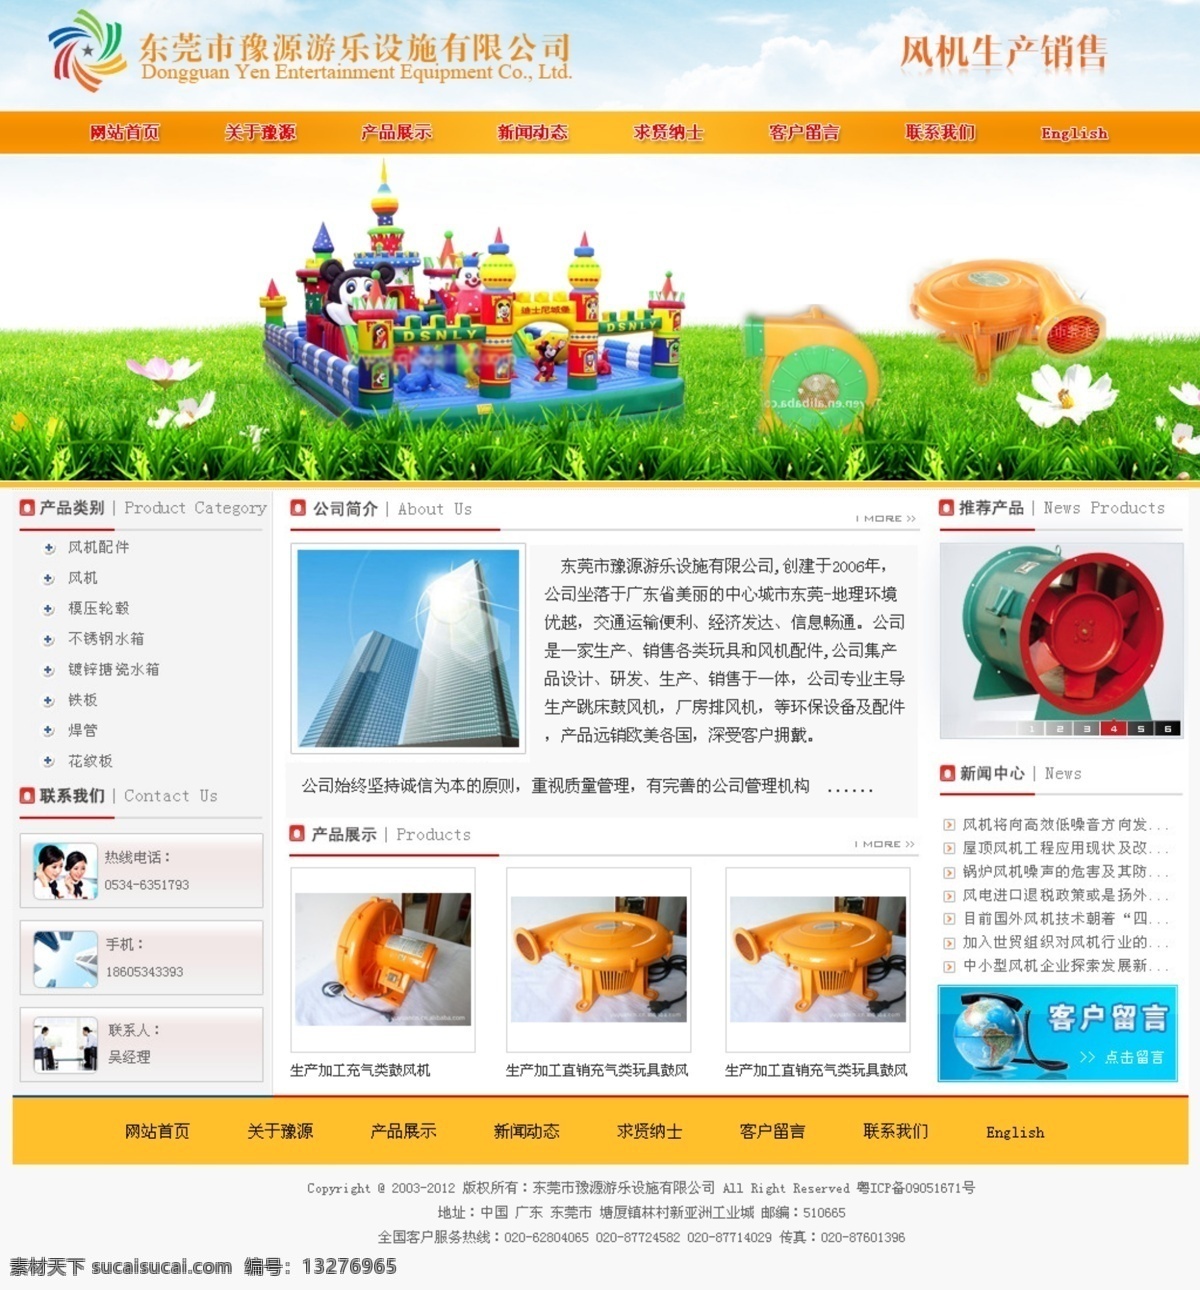 玩具 网页模板 网页设计 源文件 中文模版 模型 企业网站 模板下载 模型企业网站 玩具网站 psd源文件